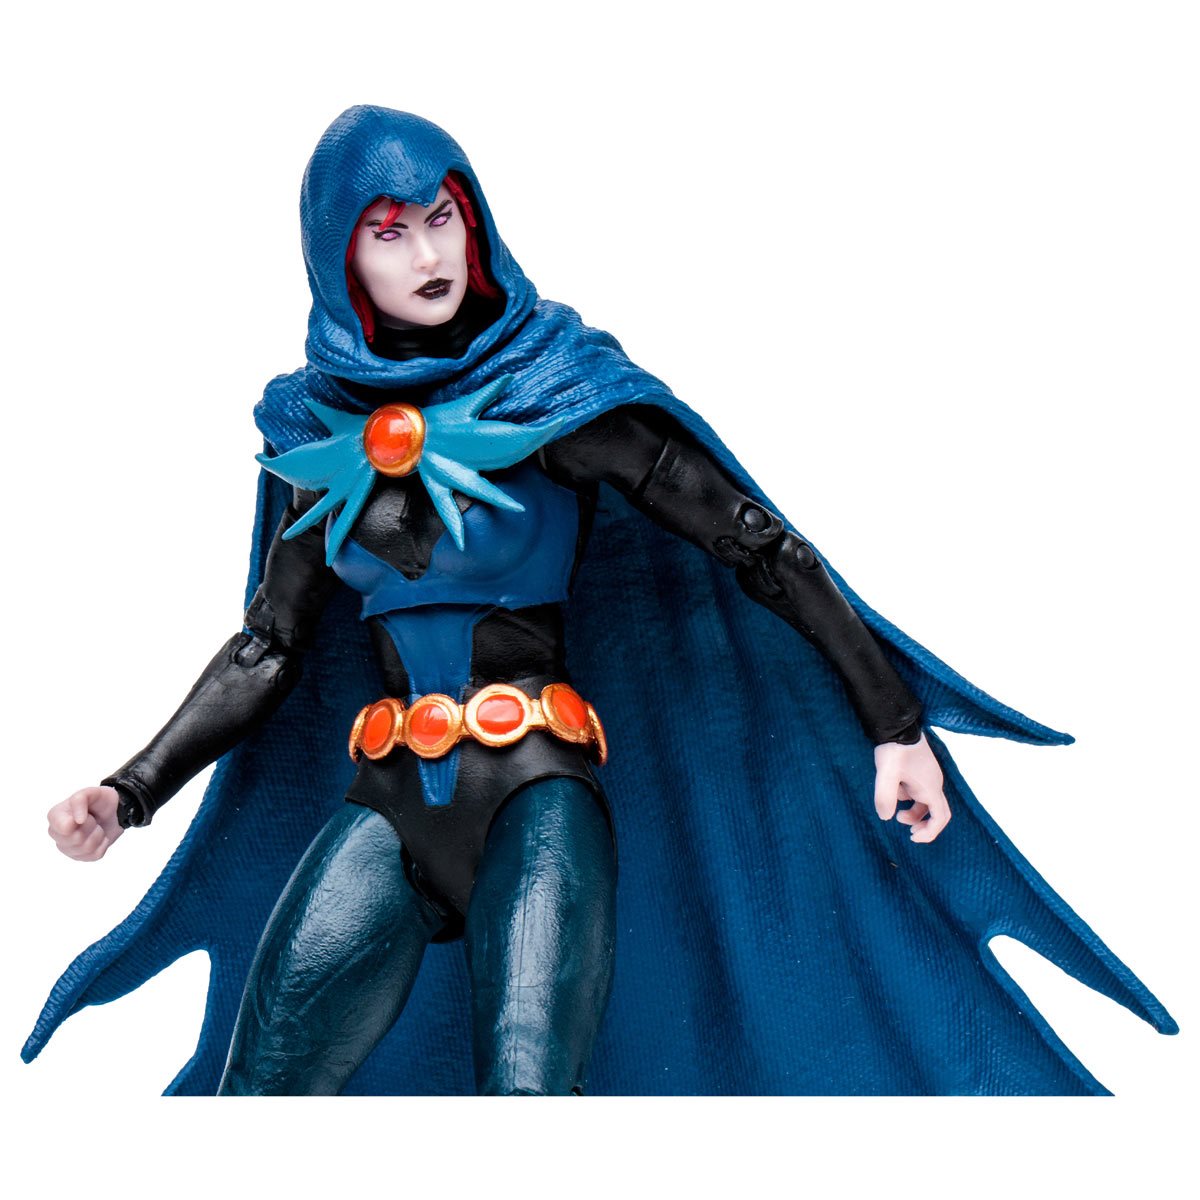 Mcfarlane DC Multiverse: Build-A Wave Titans - Raven Action Figure